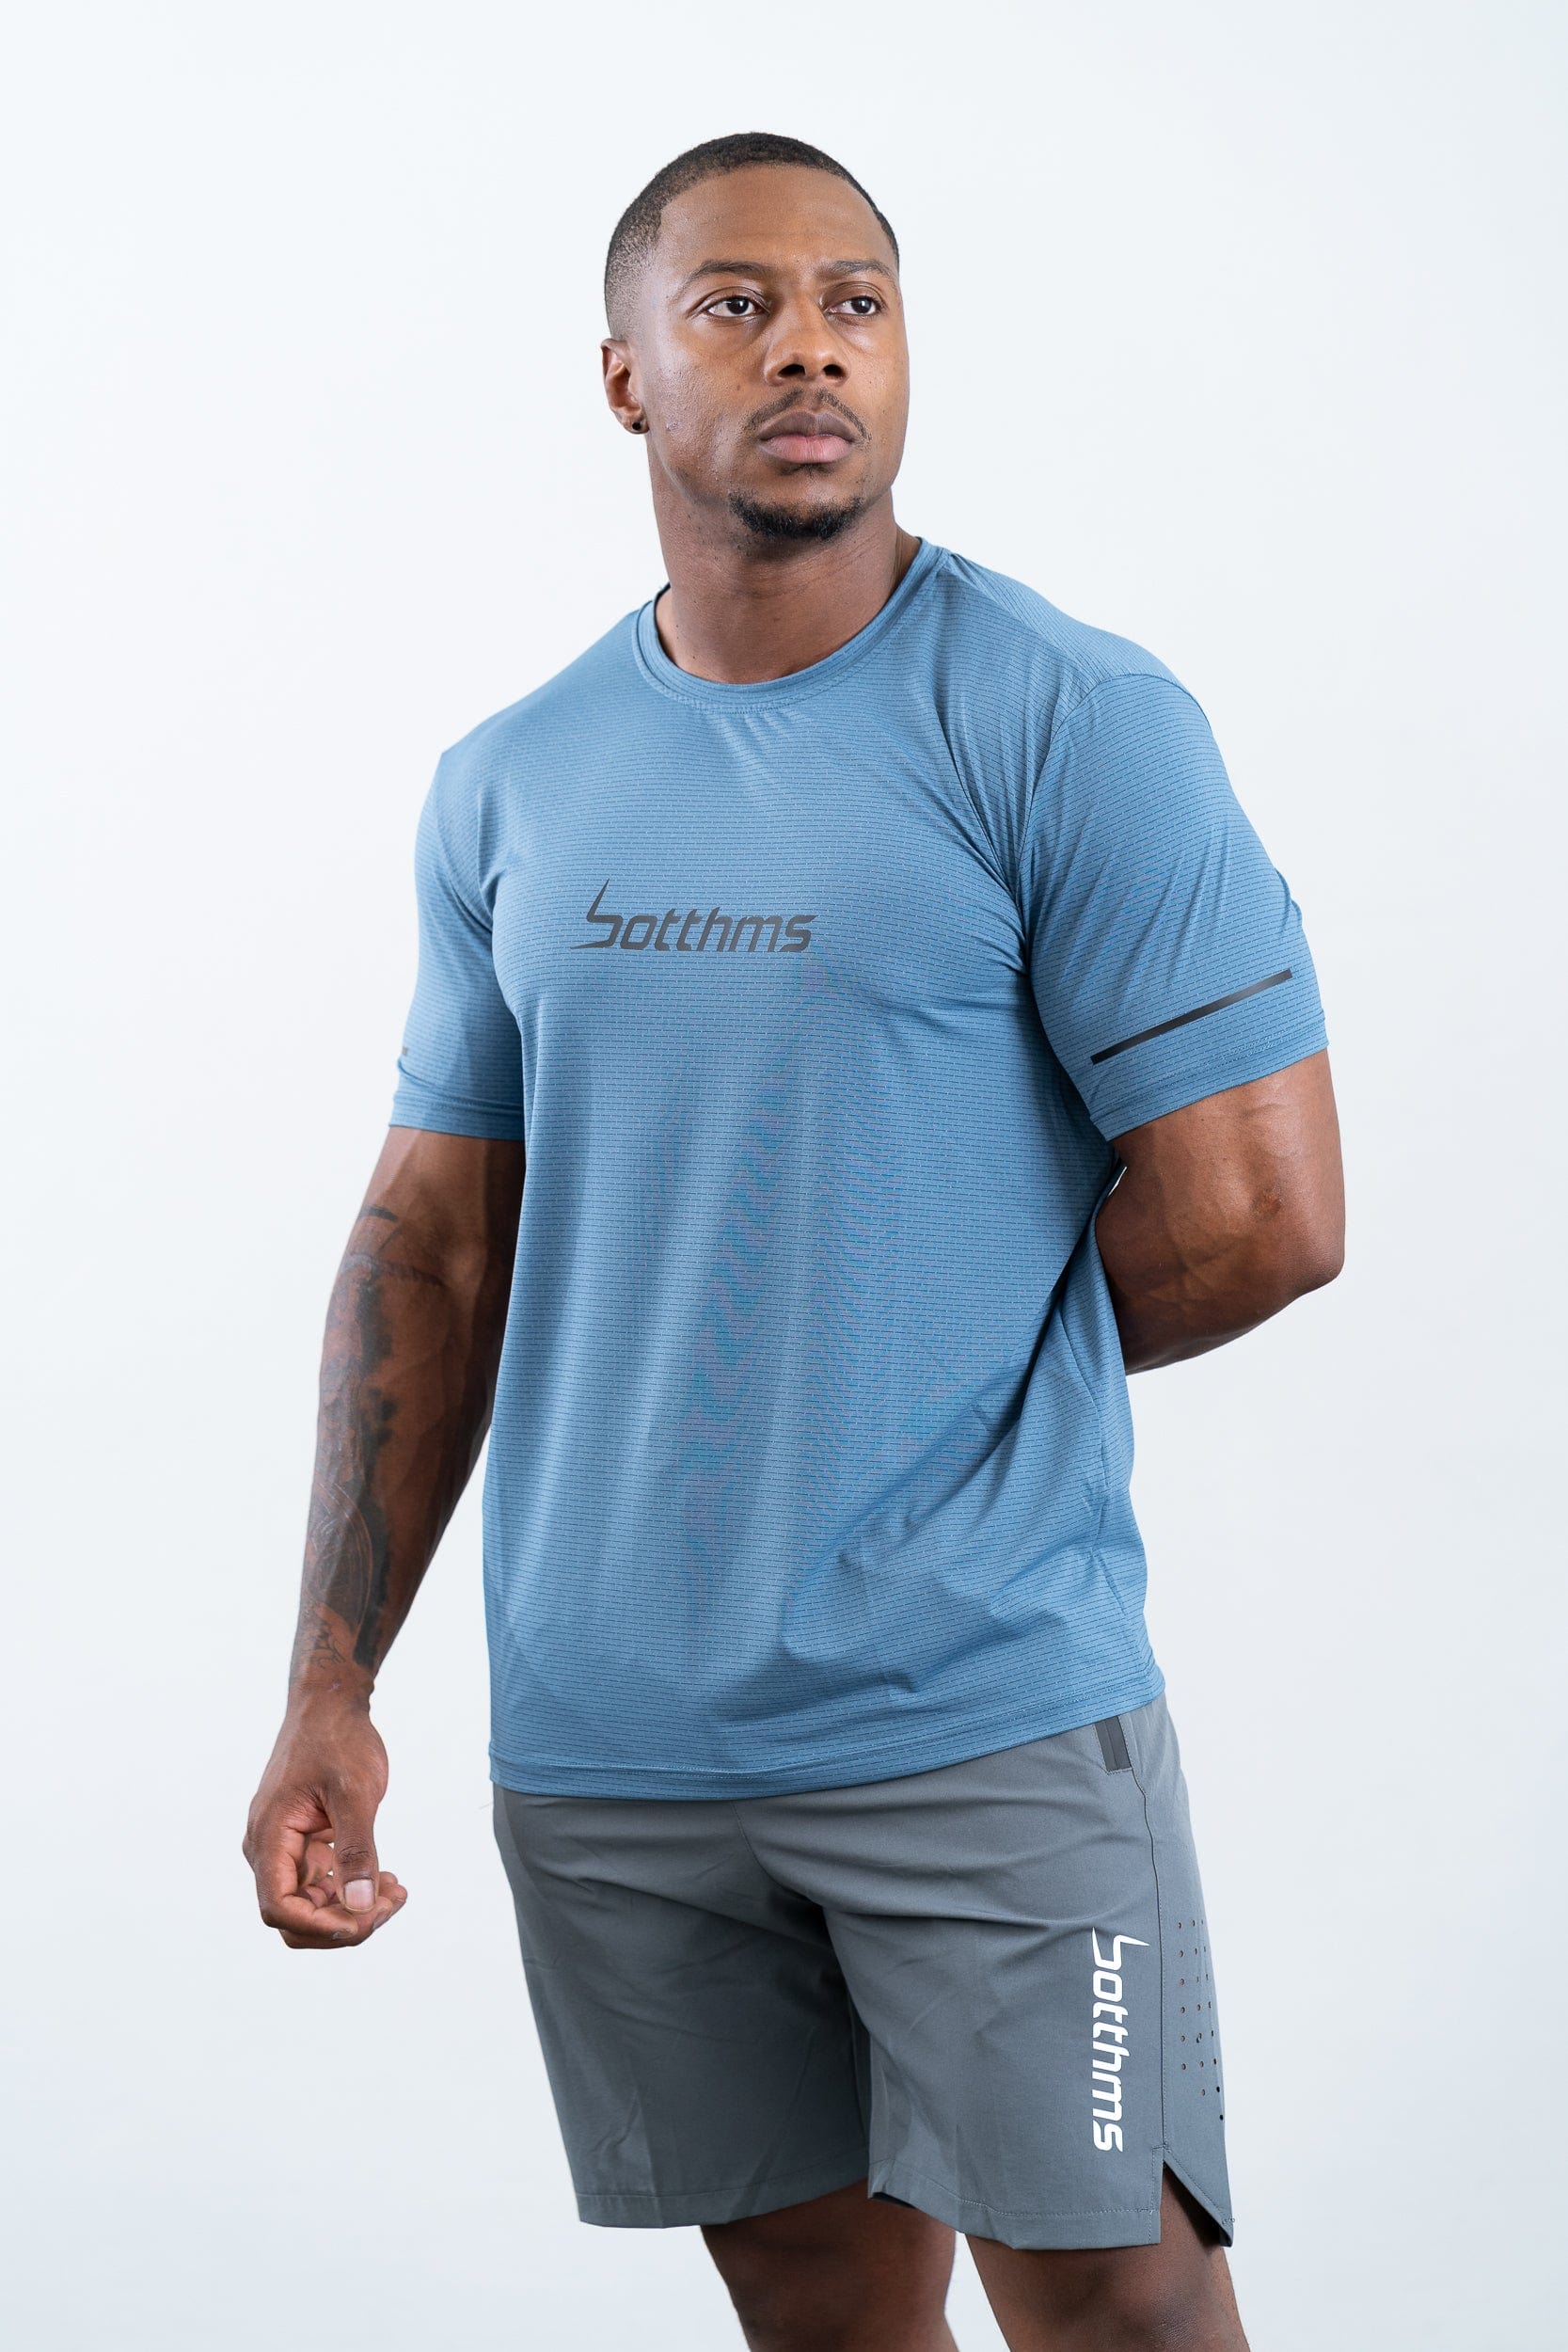 botthms botthms Sport T-Shirt - Blue T-Shirt